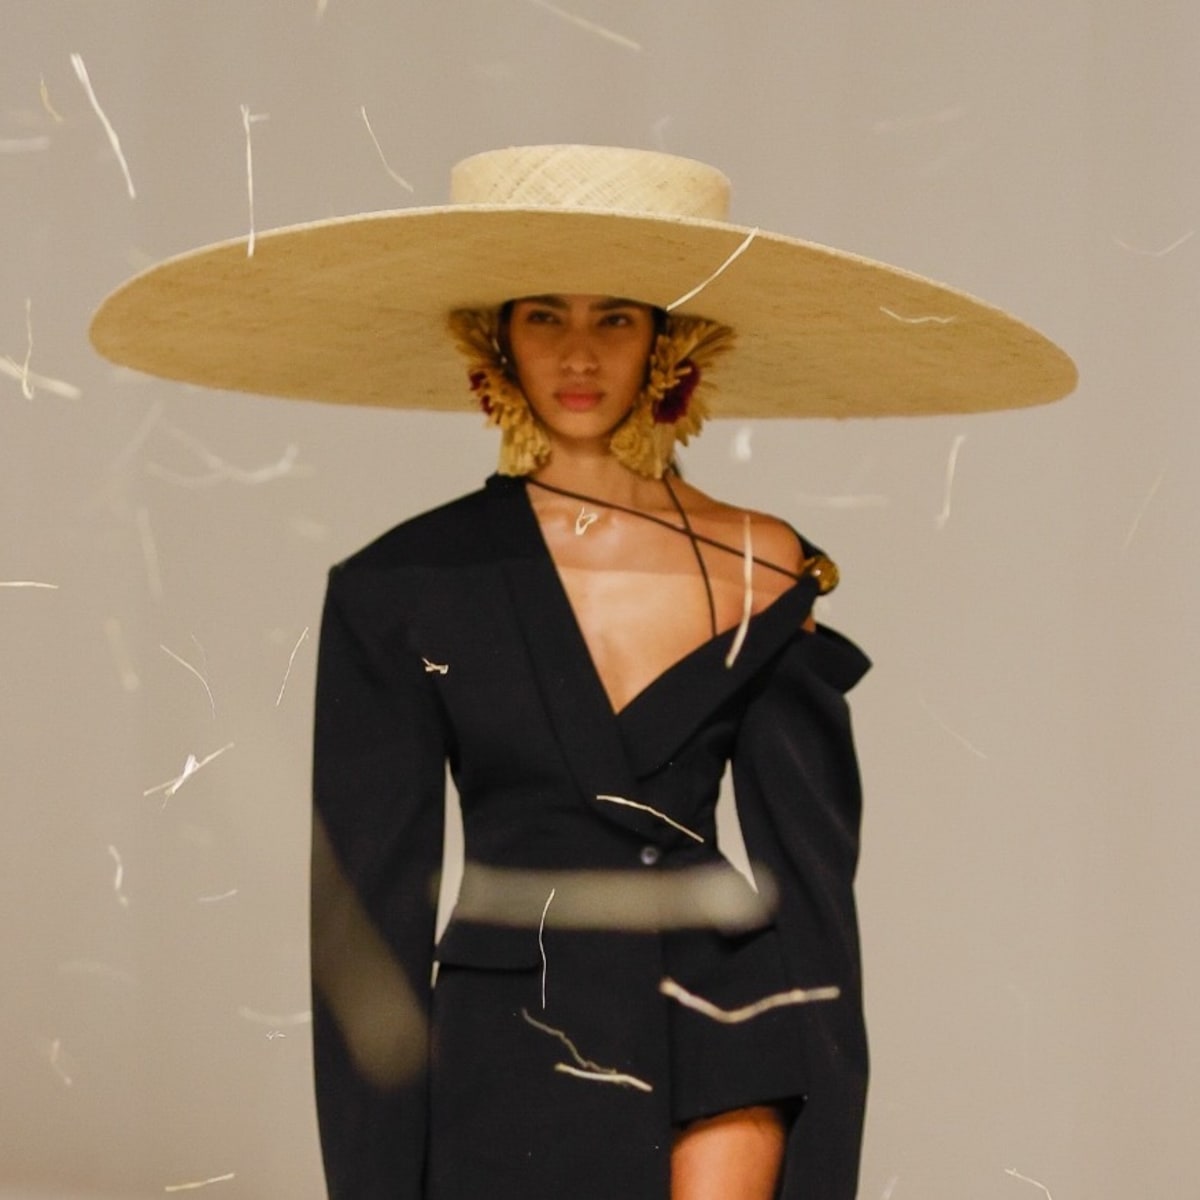 Jacquemus Spring 2023 “Le Raphia” #fashion #style #jacquemus #fashionshow  #fashioninspo #design #fashiondesign #luxury